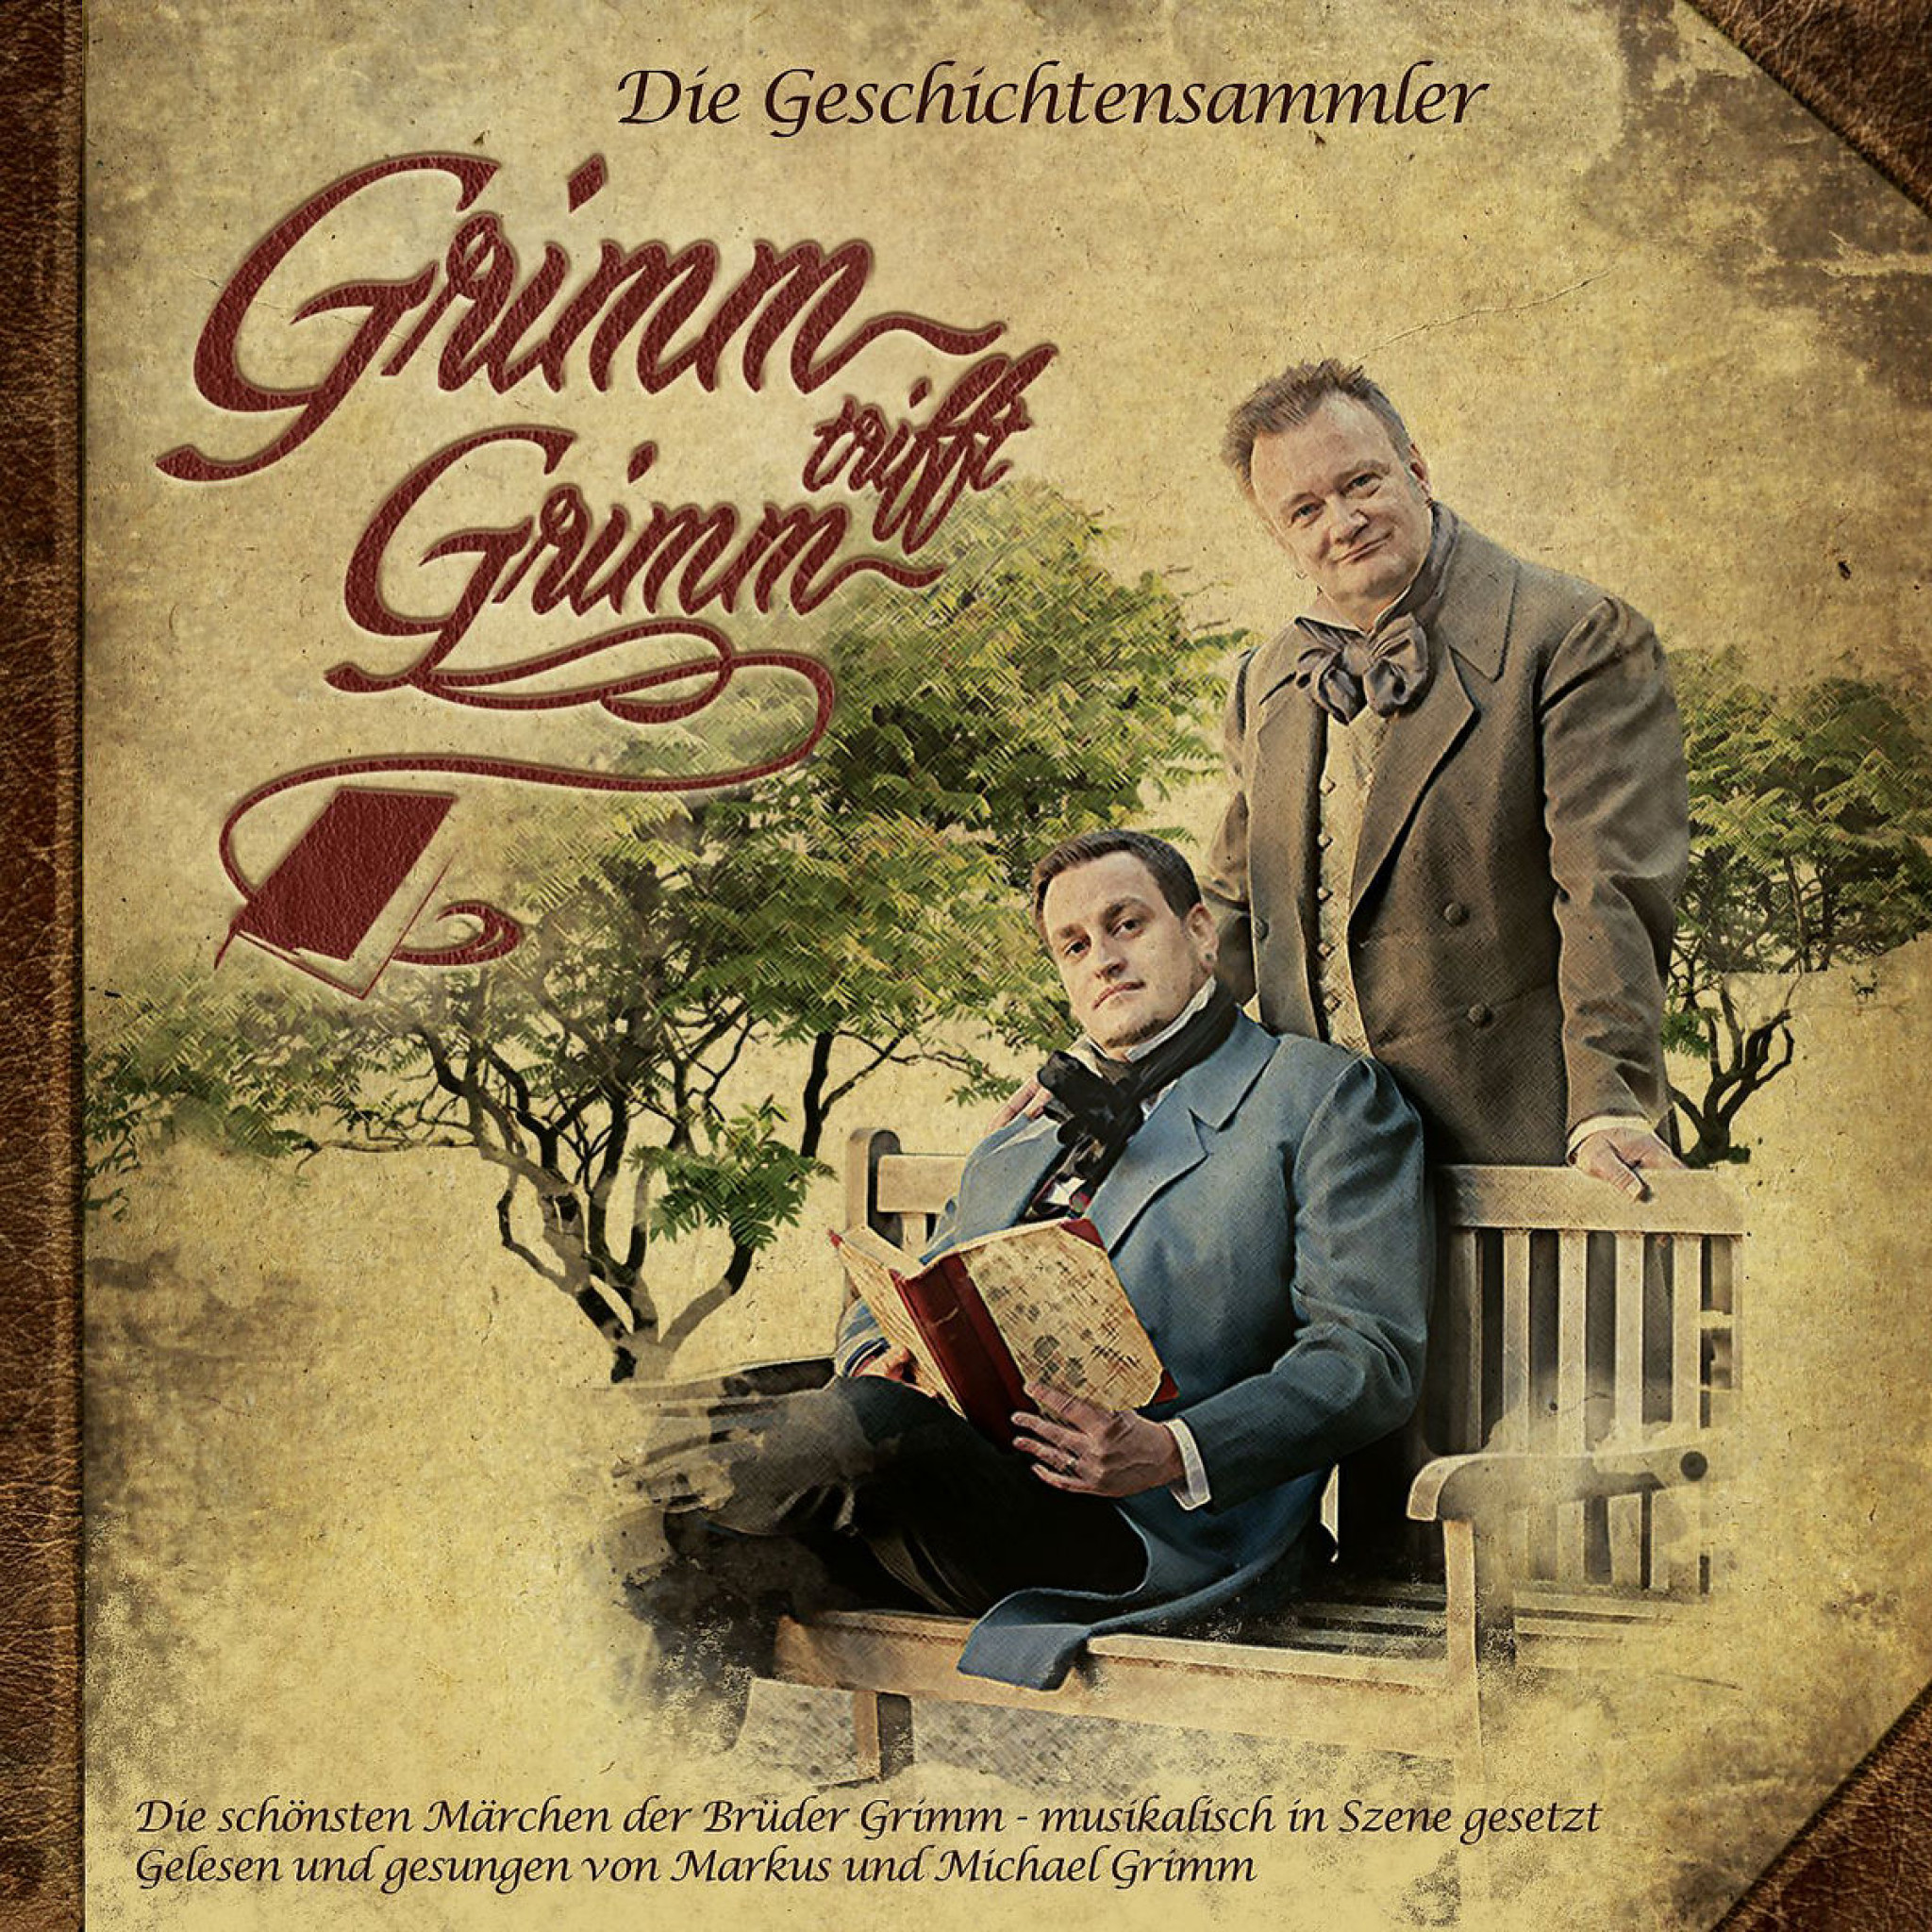 Die Geschichtensammler - Grimm-Märchen musikalisch: Grimm trifft Grimm